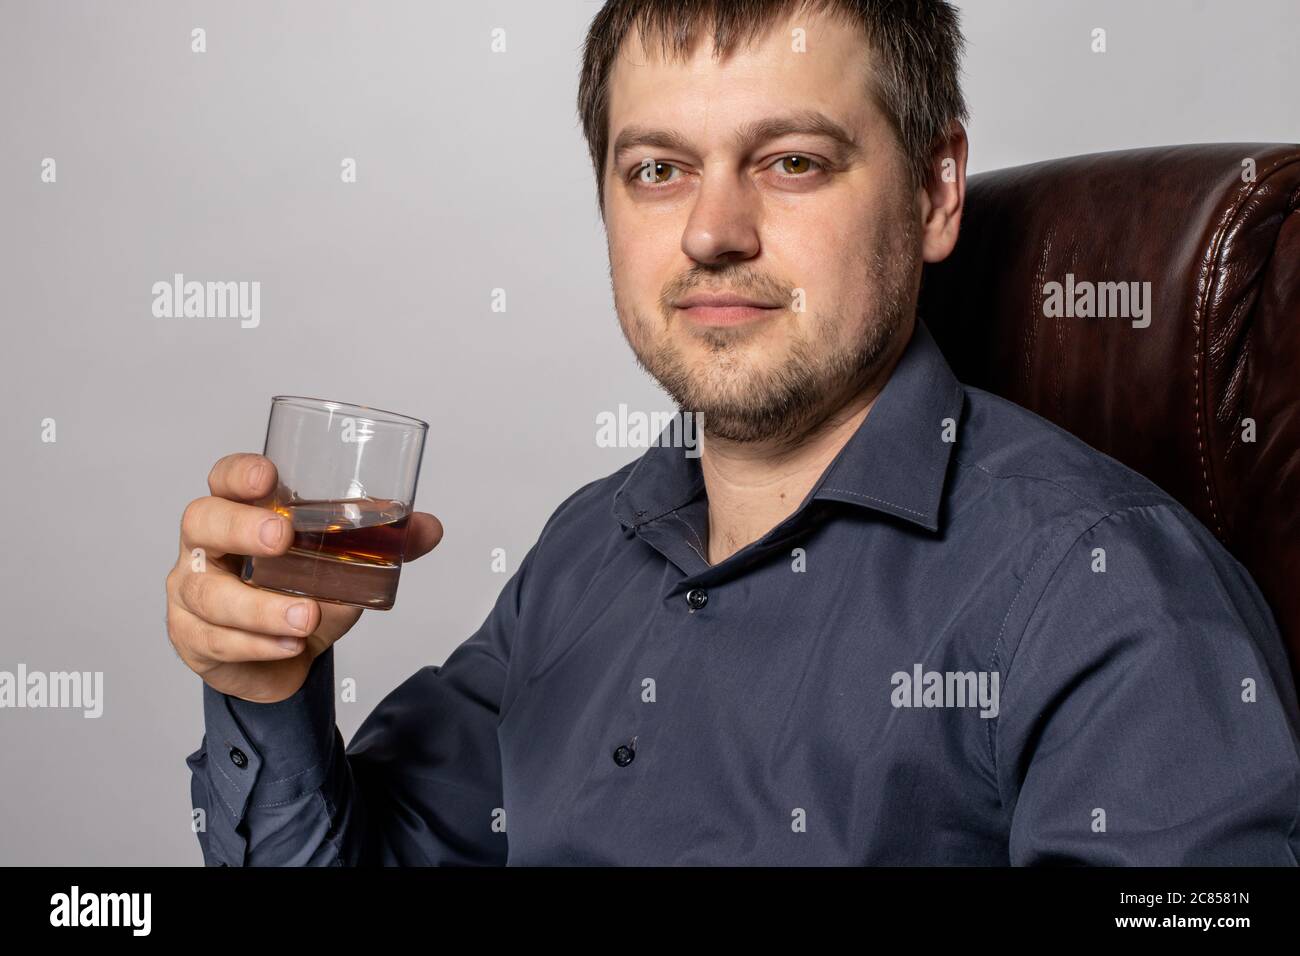 Ein hübscher junger Mann von 30-35 Jahren im Hemd sitzt auf einem braunen Ledersessel und hält ein Glas Whiskey in der Hand. Stockfoto